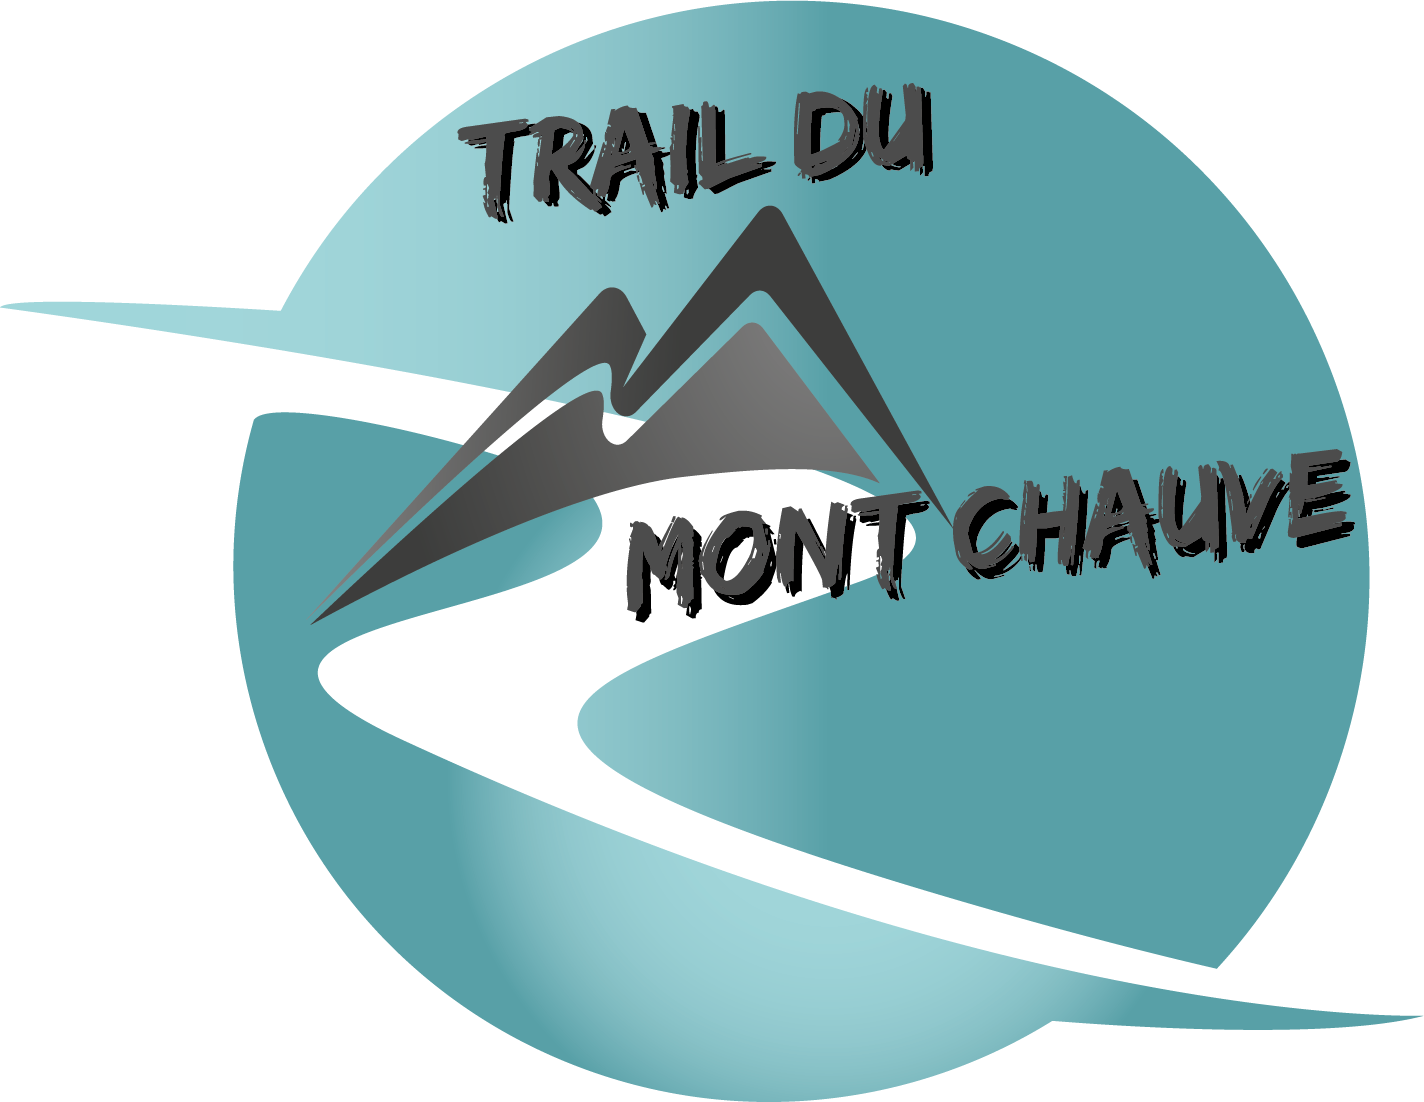 Trail du Montchauve